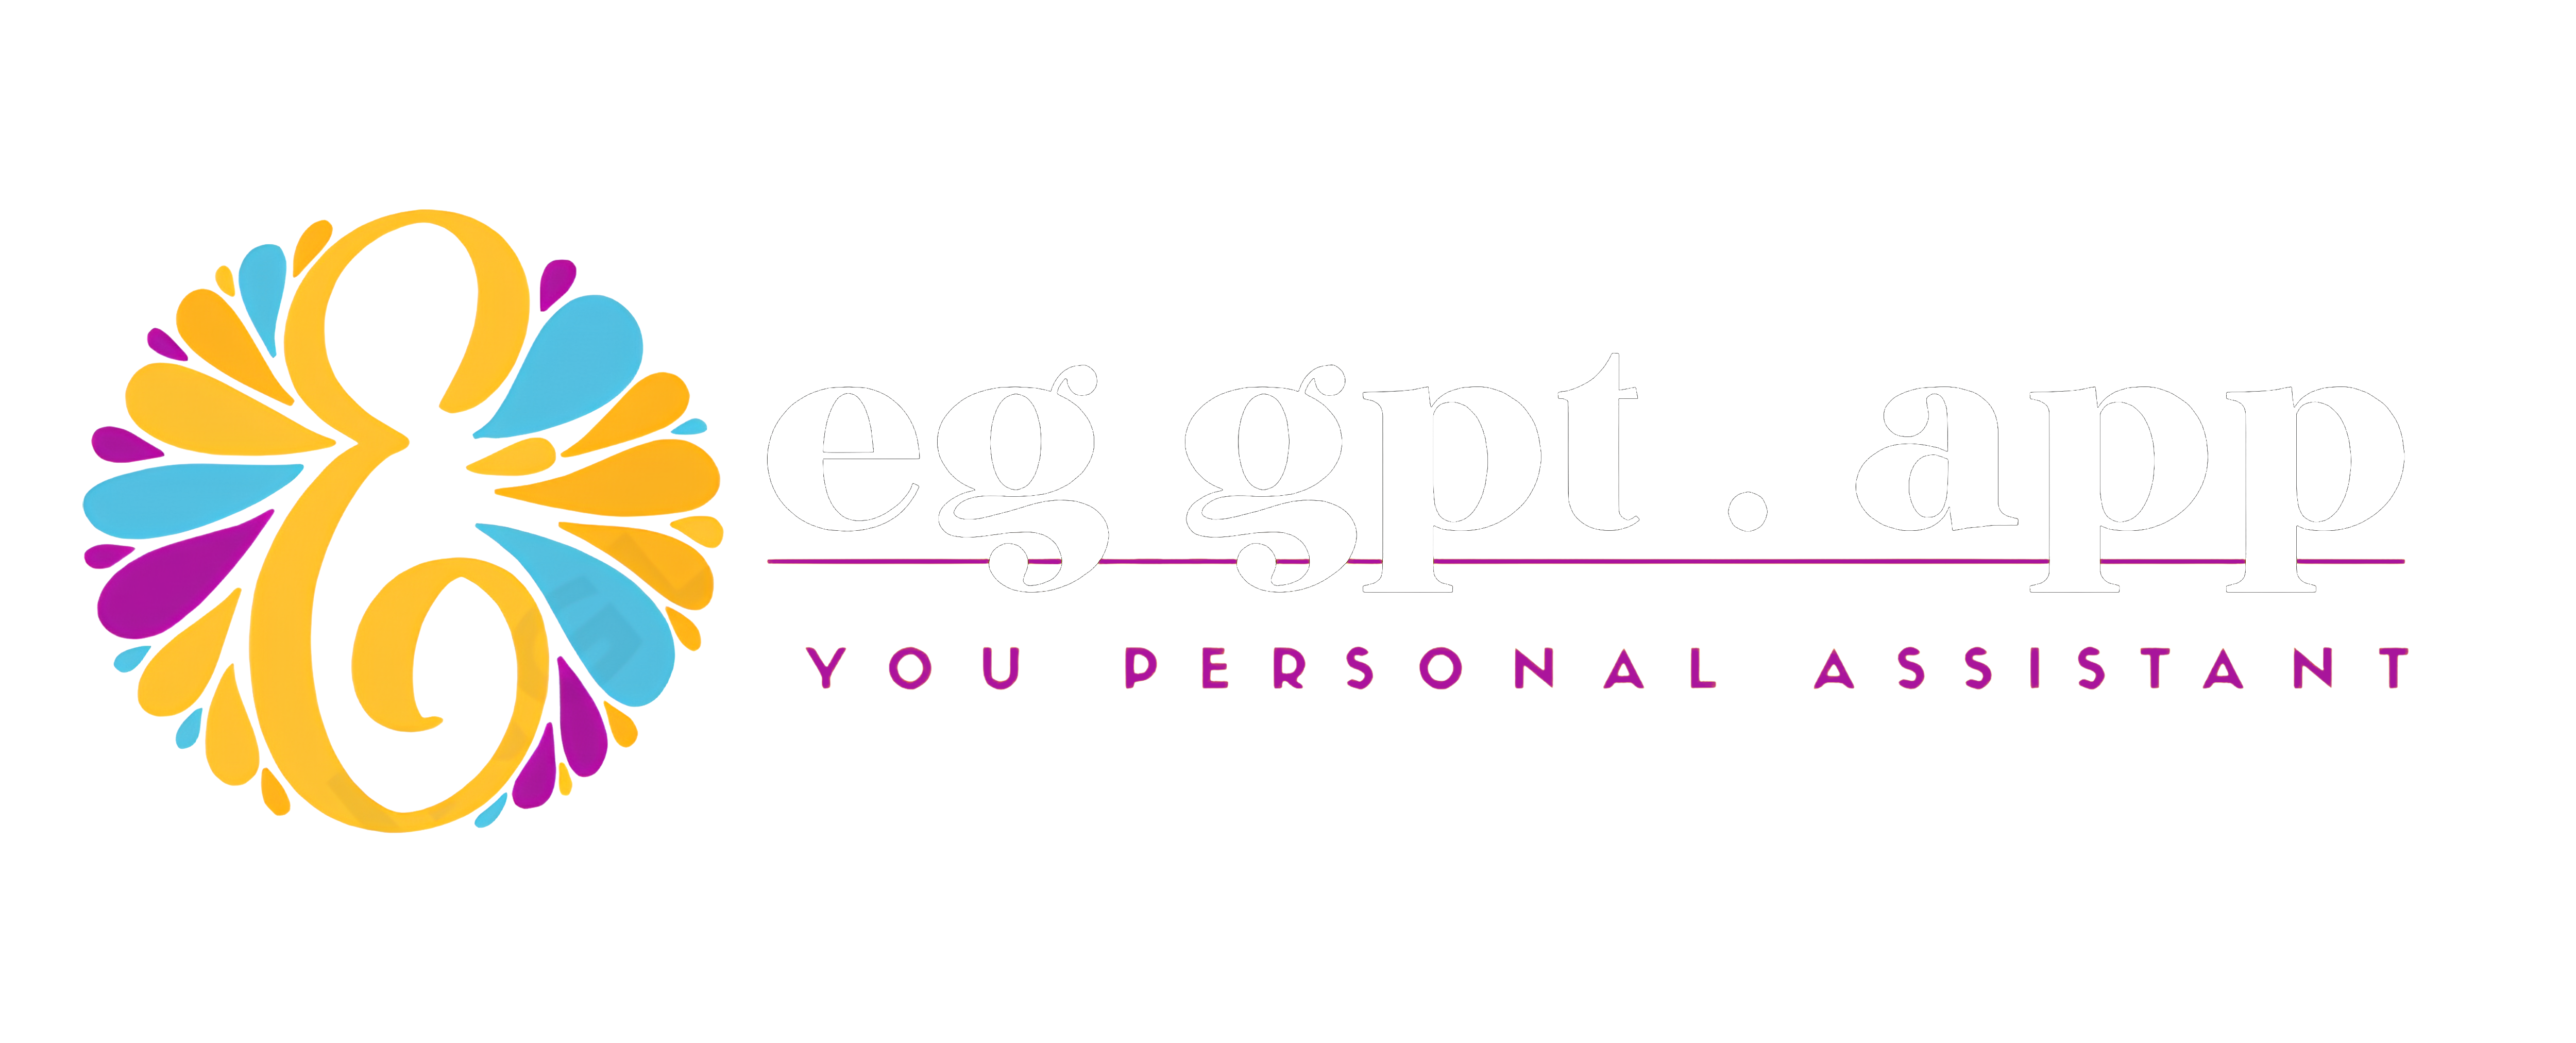 EG gpt- Content & Image Generator